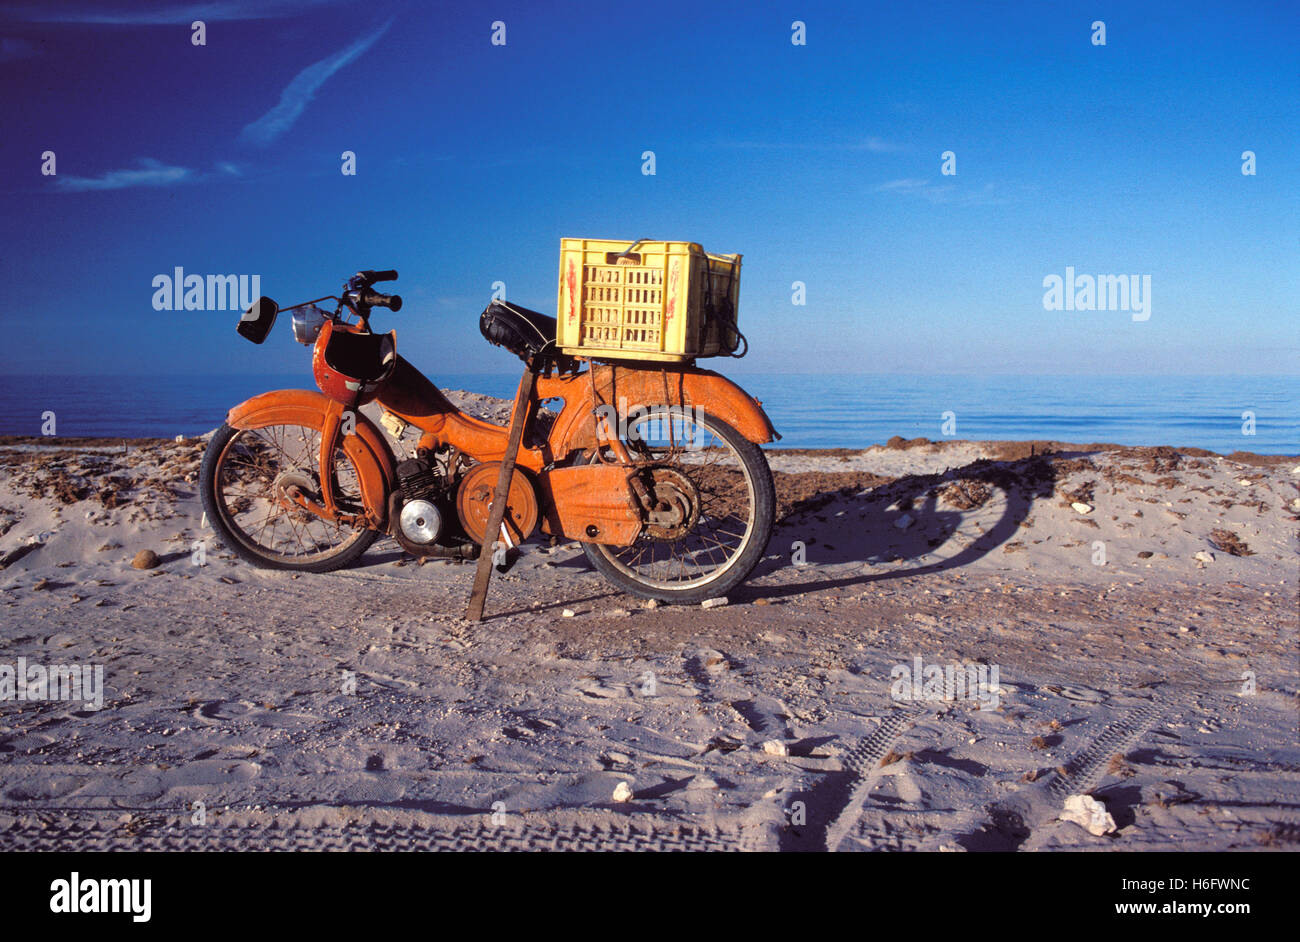 Tunisia, Jarbah Island, old moped at the Sidi Mahrez beach. Stock Photo